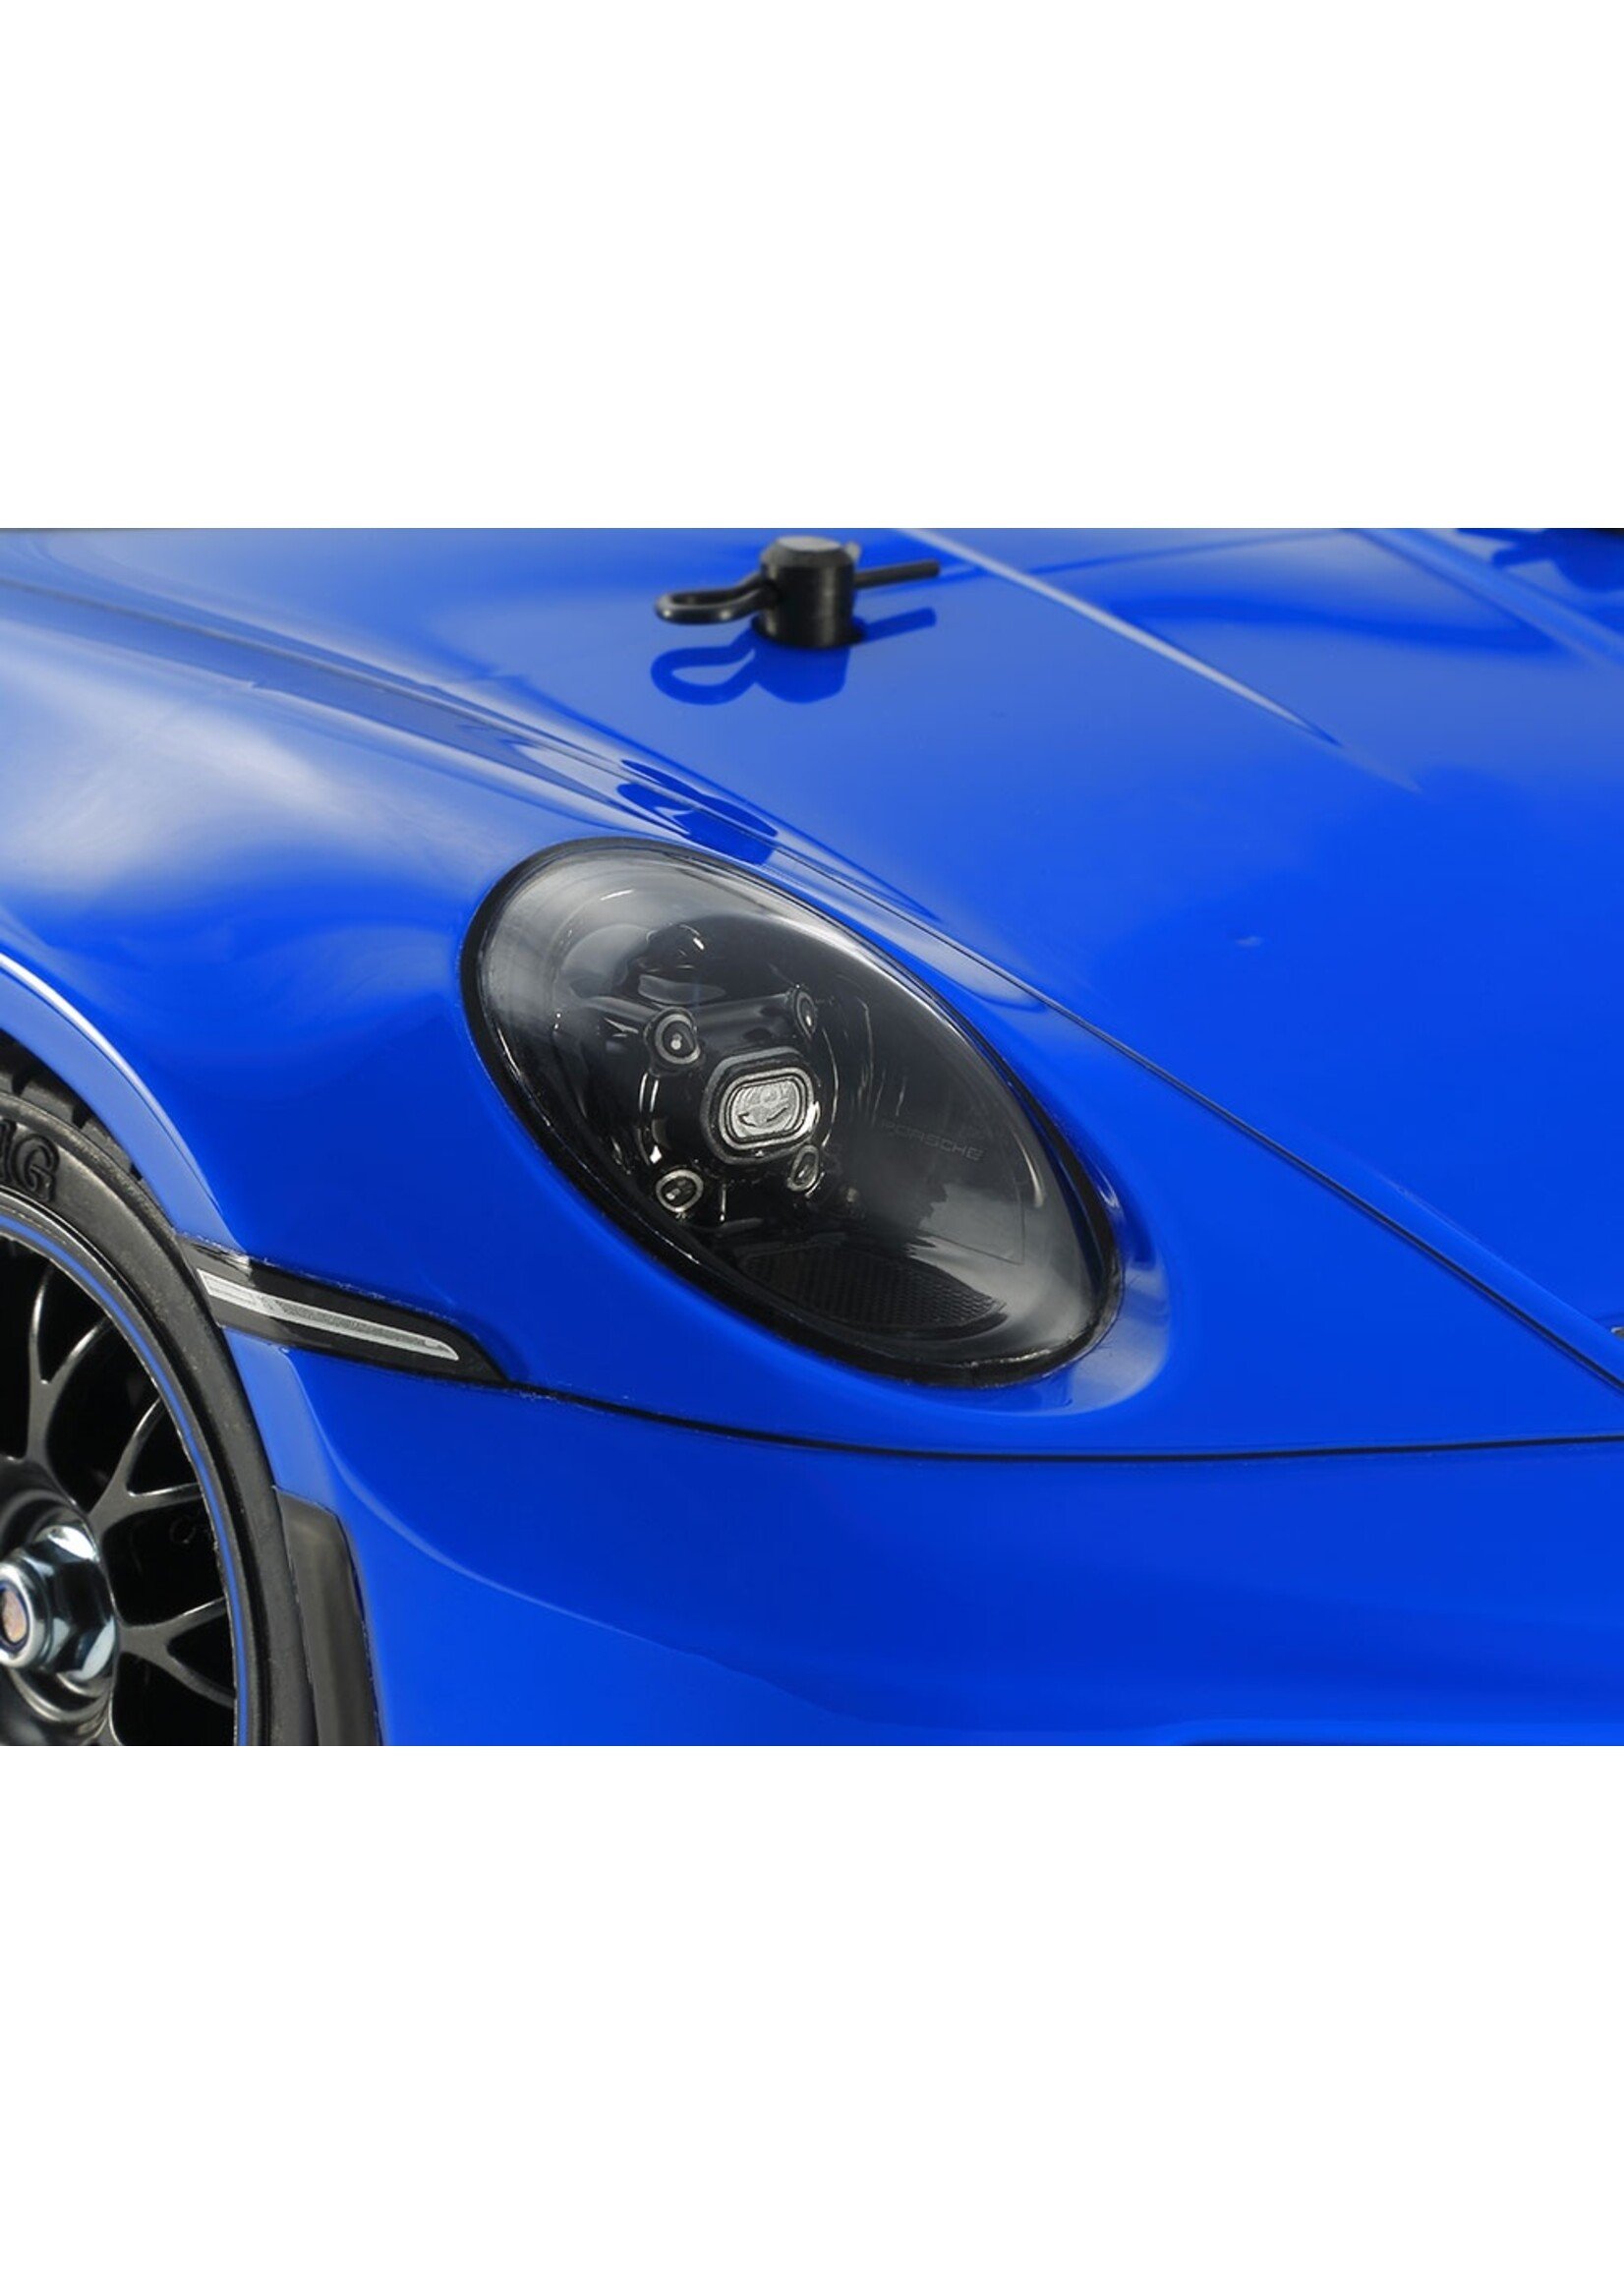 Tamiya 47496A - 1/10 RC Porsche 911 GT3 (992), Blue Painted Body (TT02)